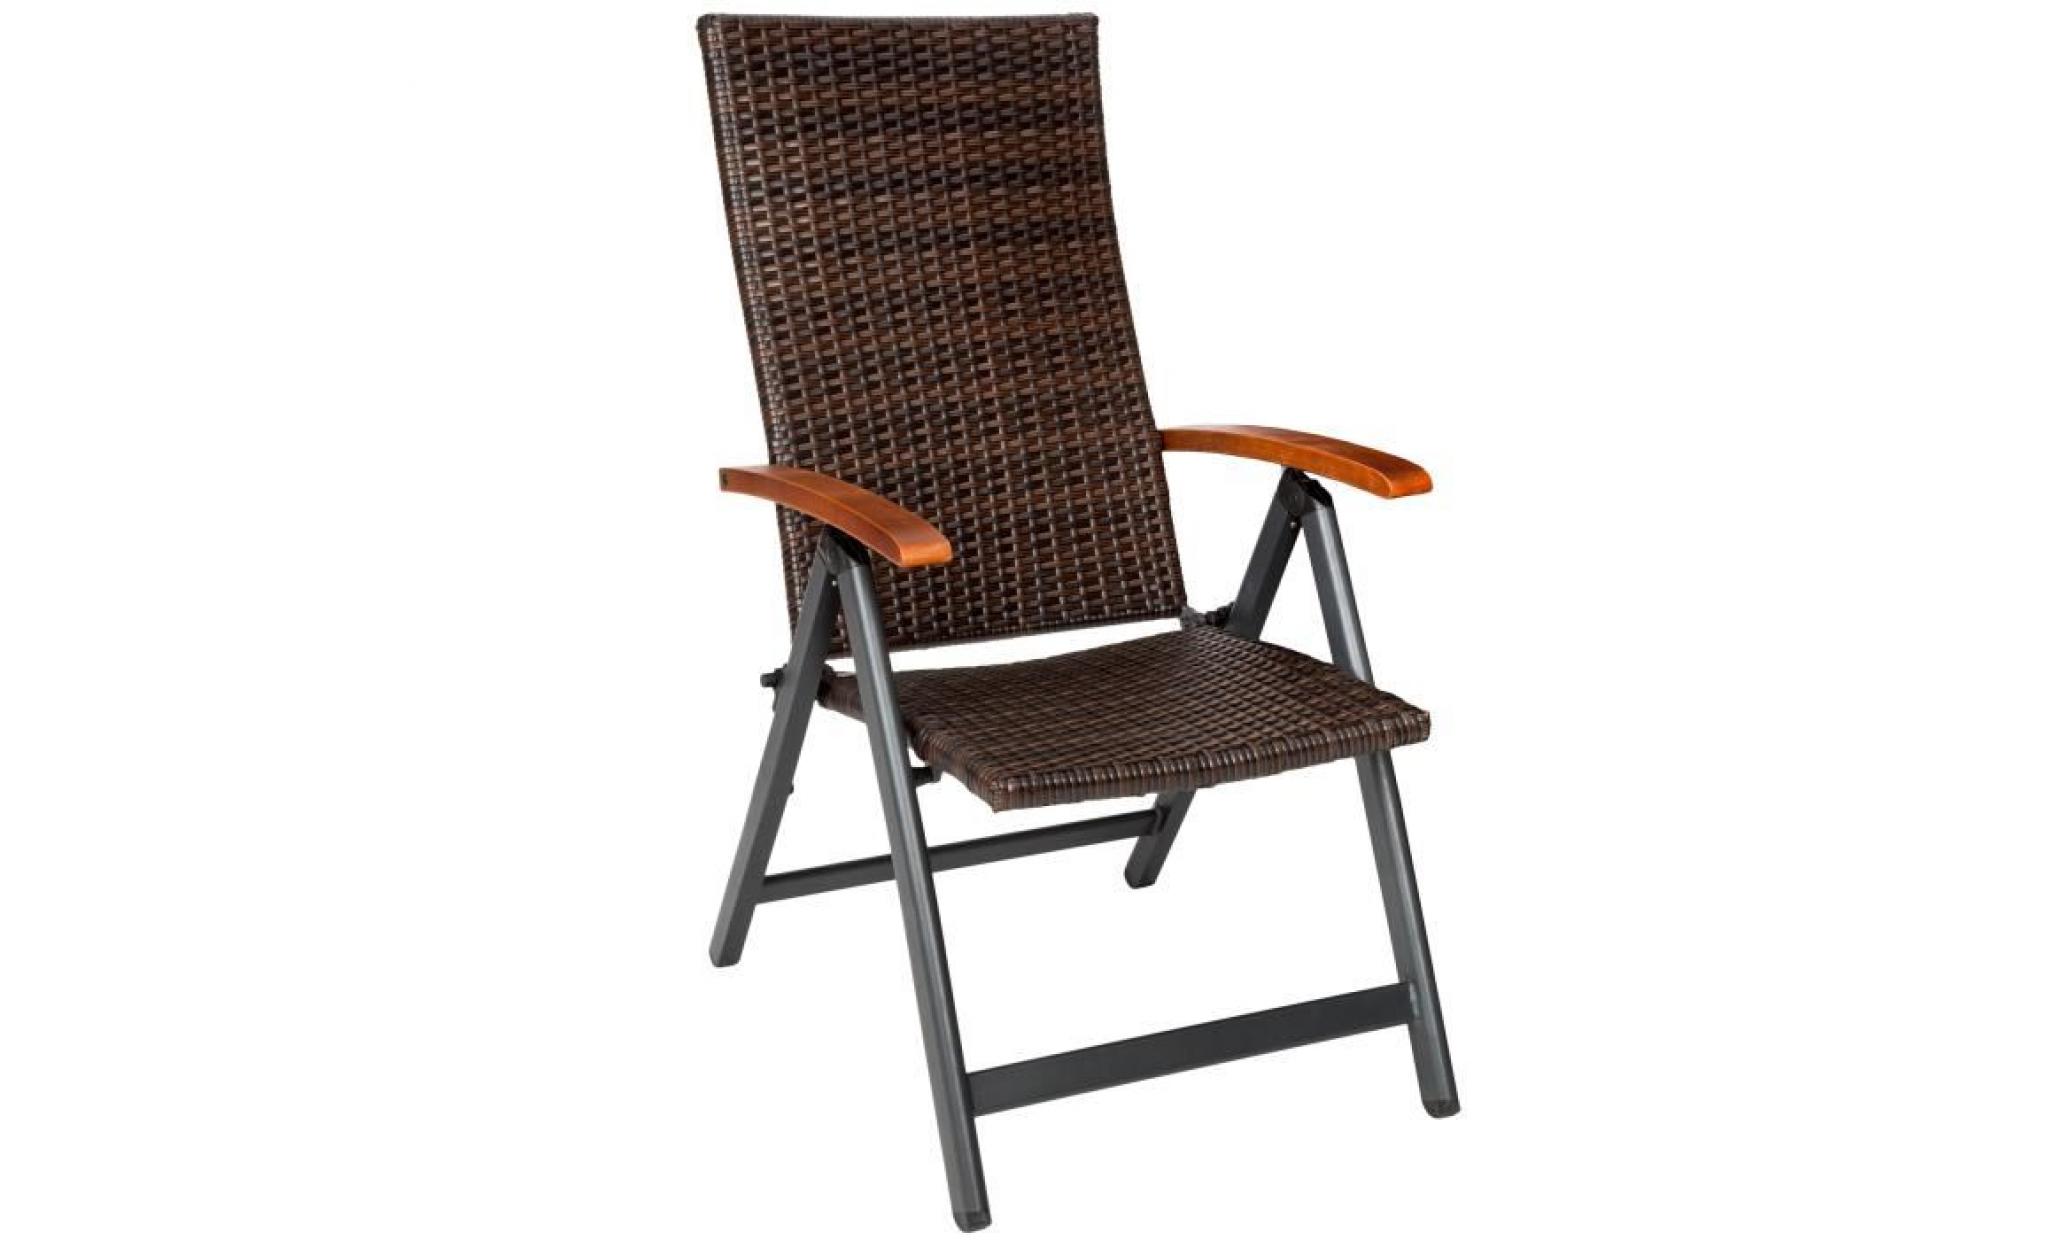 tectake chaise de jardin fauteuil de jardin de camping pliante réglable en aluminium et résine tressée 68 cm x 59 cm x 109 cm marron